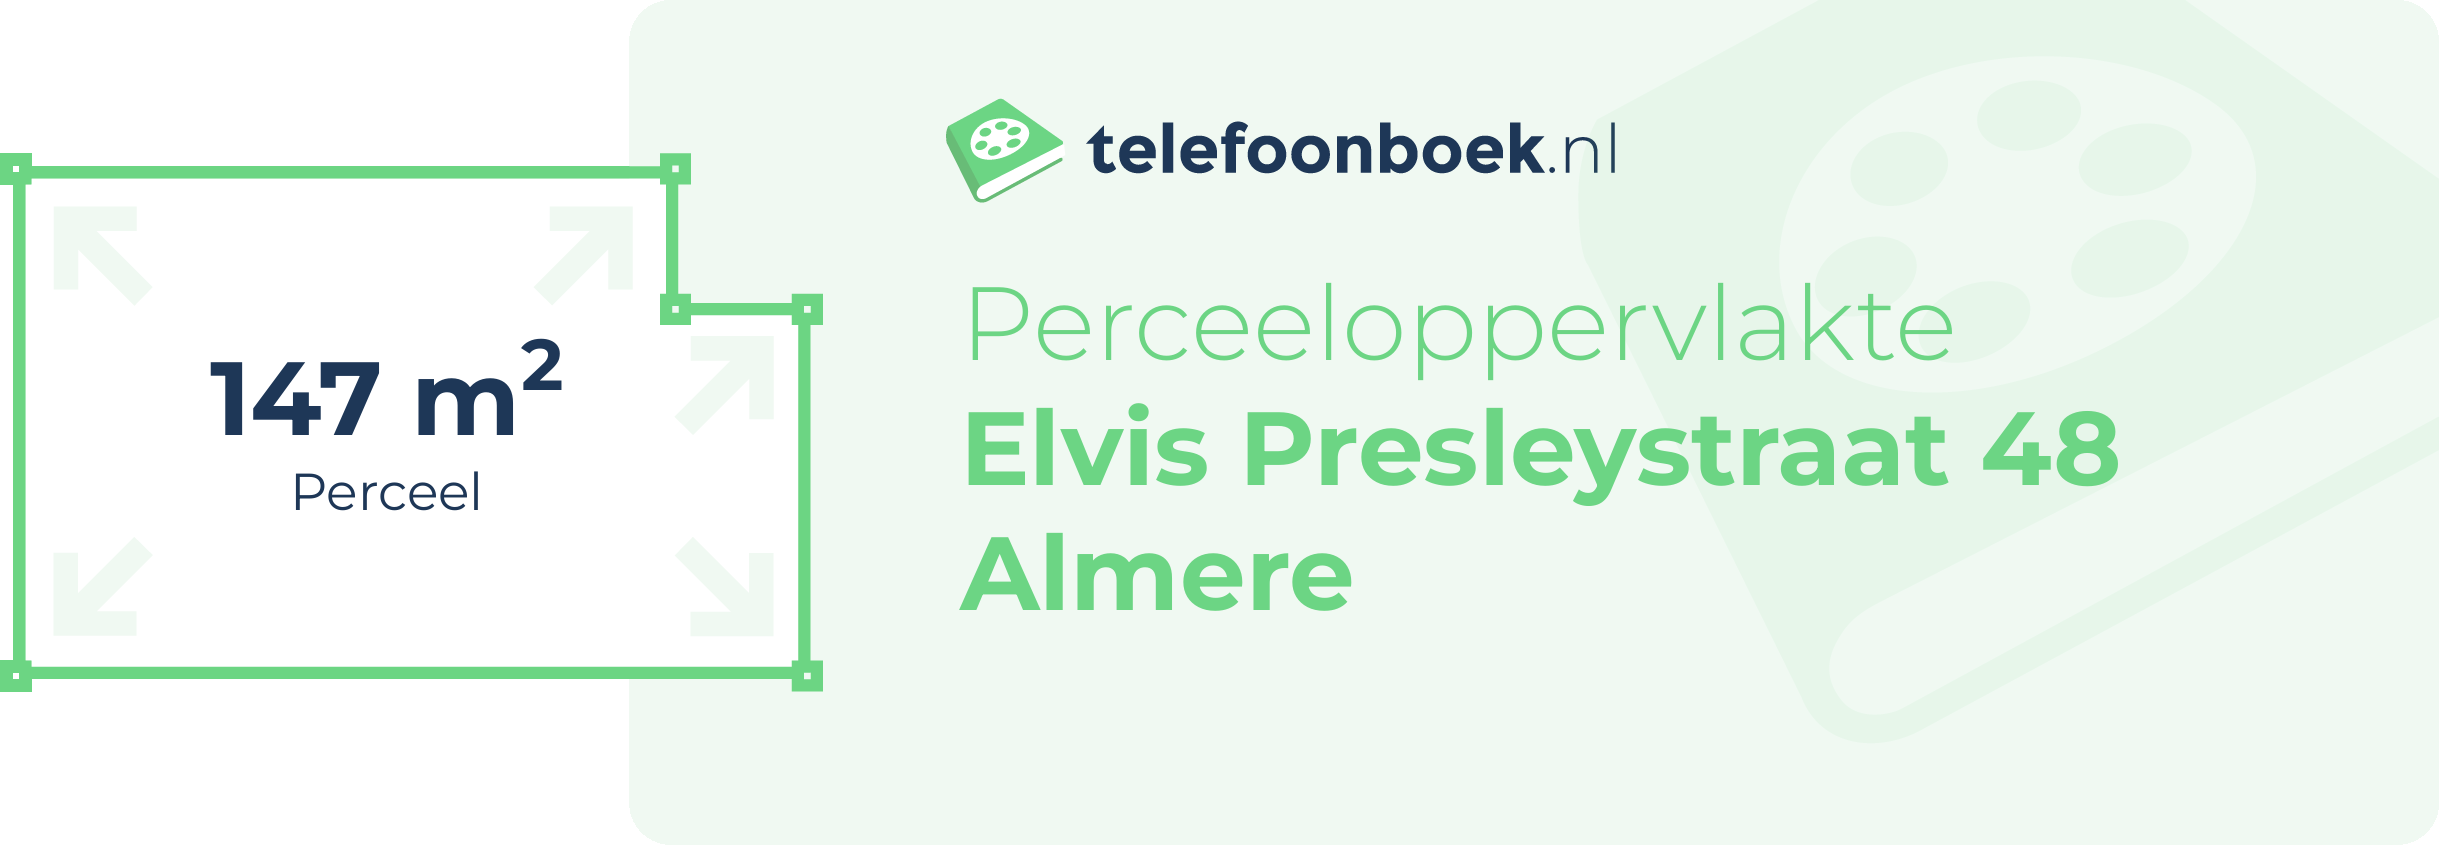 Perceeloppervlakte Elvis Presleystraat 48 Almere